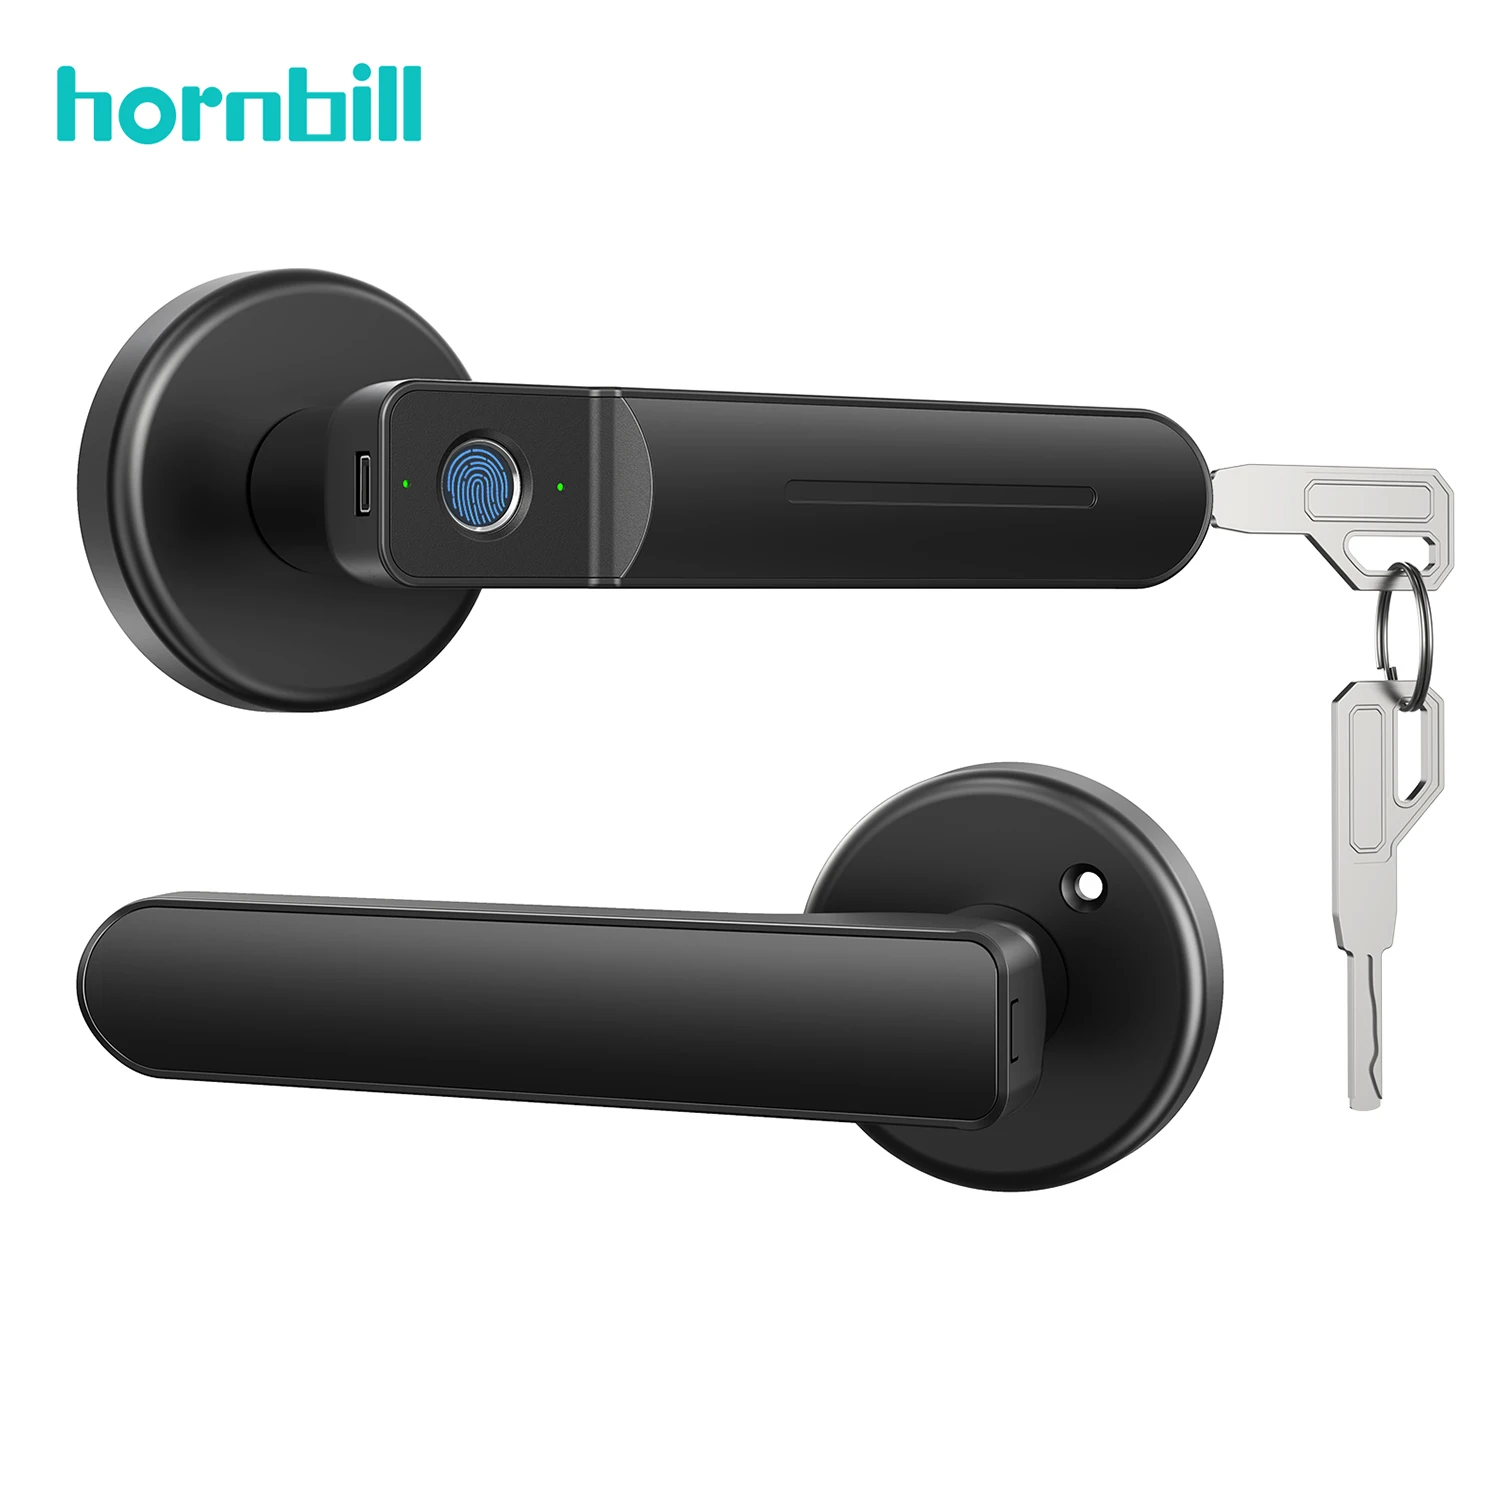 Hornbill Fingerprint Door Lock Bedroom Handle Biometric Door Lock Auto Security Protcrection For Indoor Home Office Apartment